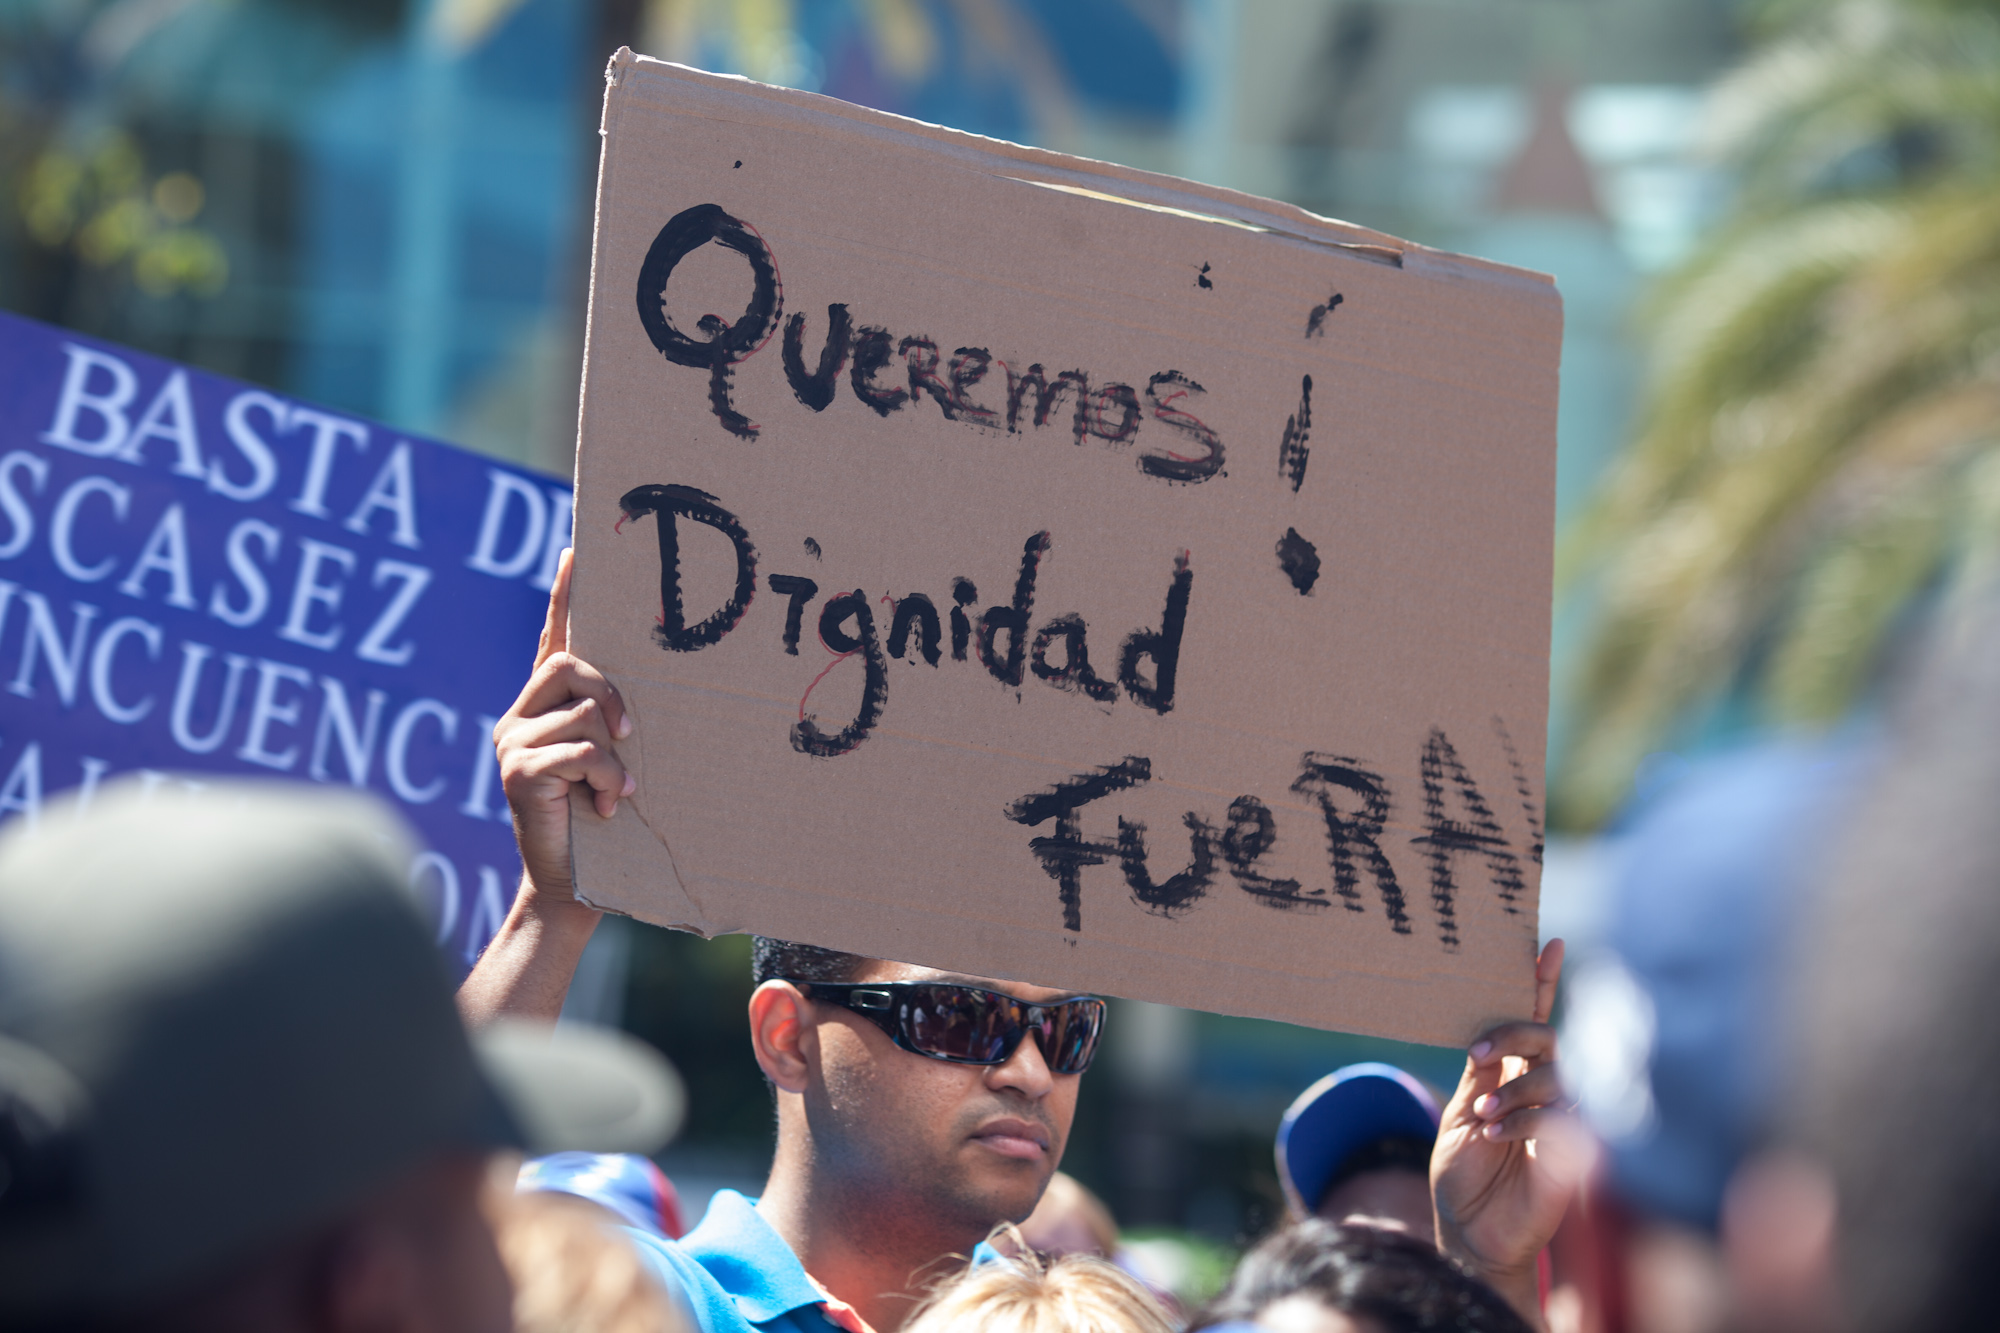 Así protestaron armados de pancartas estos peligrosos “derechistas” frente al Venetur Margarita (Fotos)